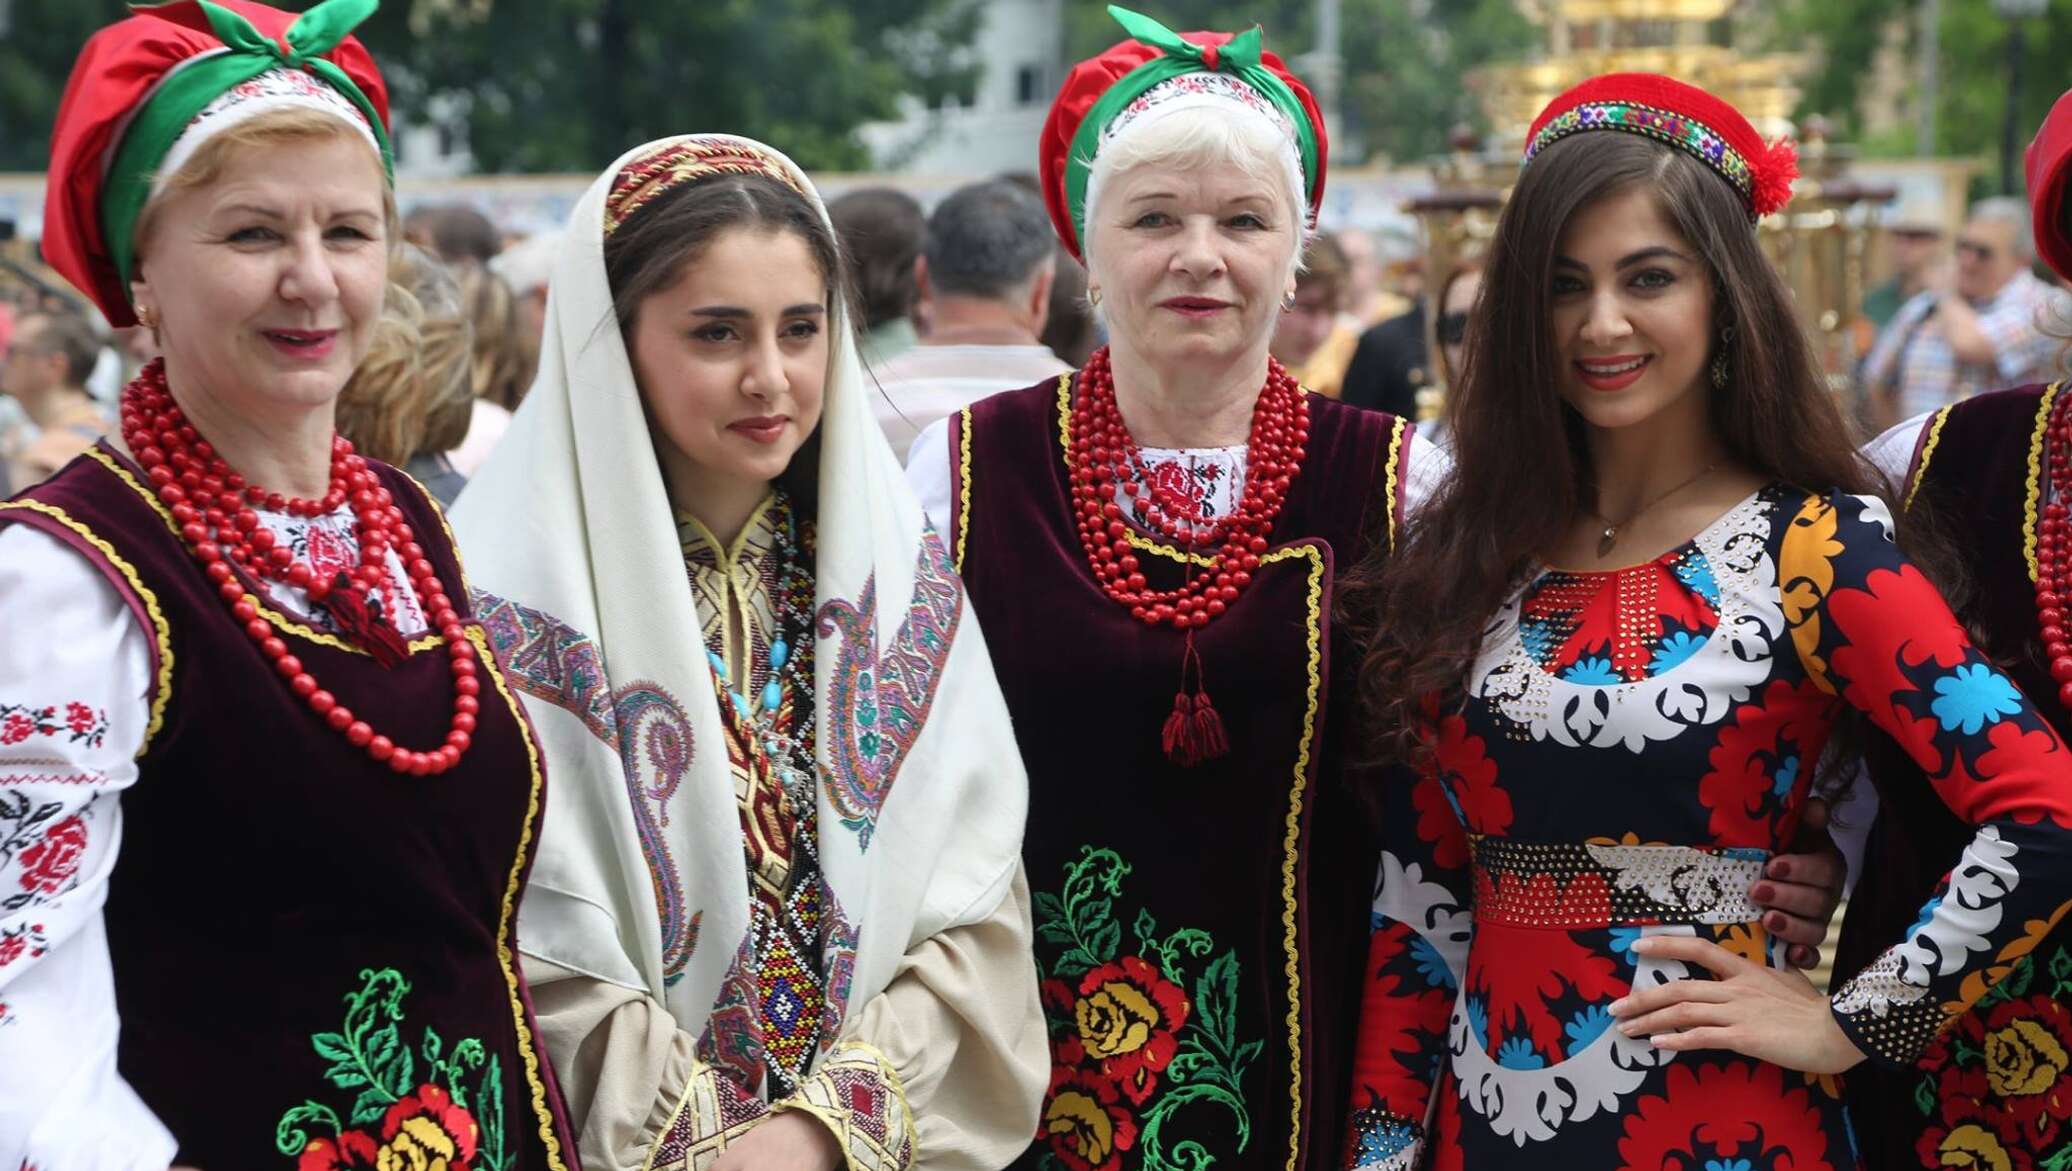 Как относятся к таджикам в россии